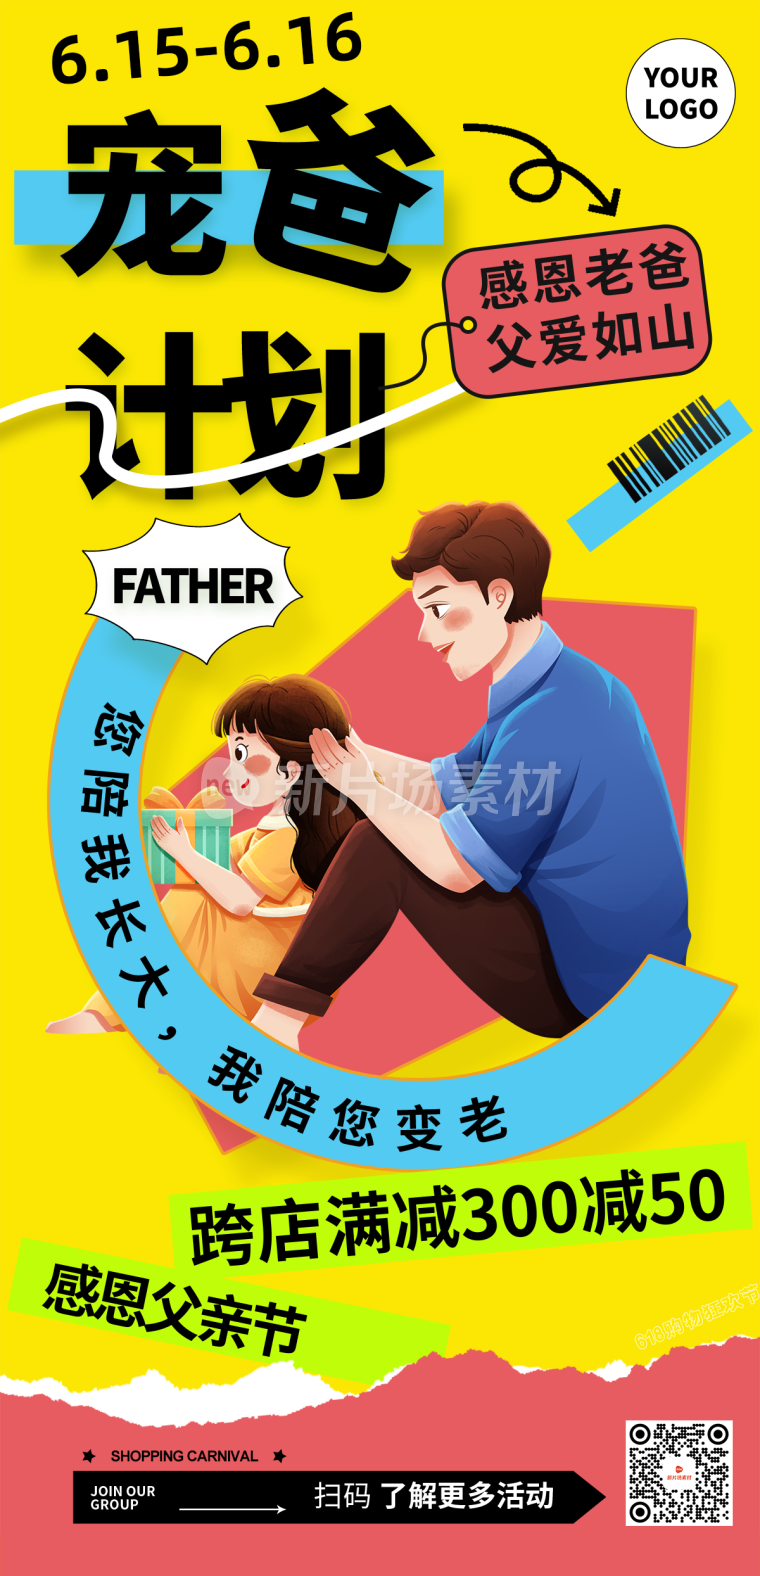 父亲节节日营销宣传长图海报简约风